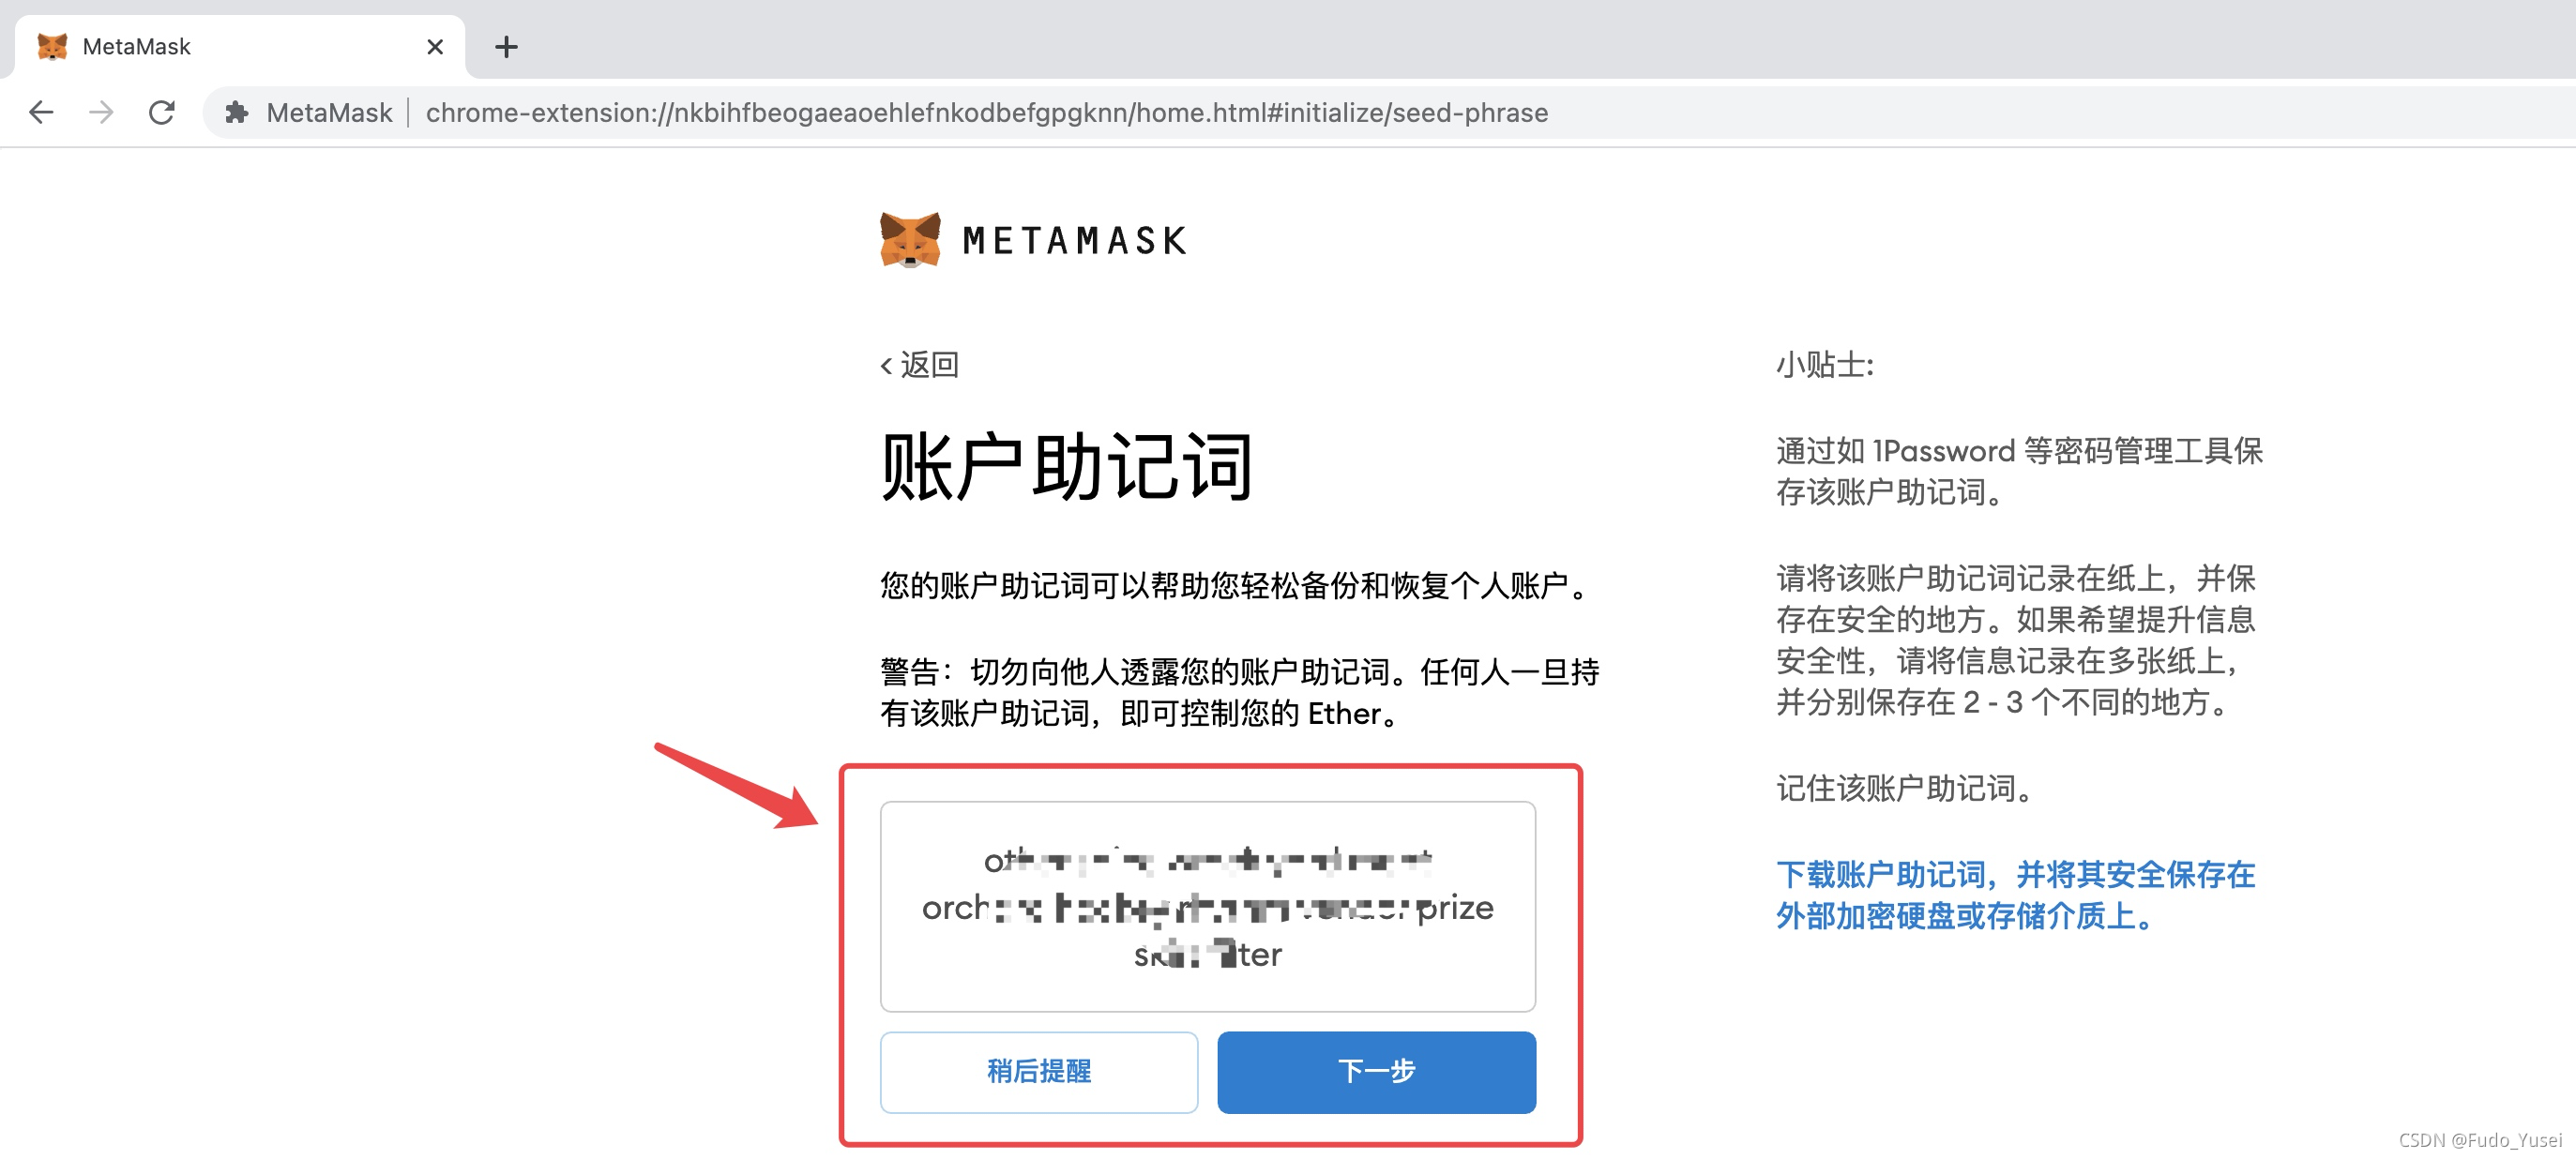 关于metamask下载安装的信息